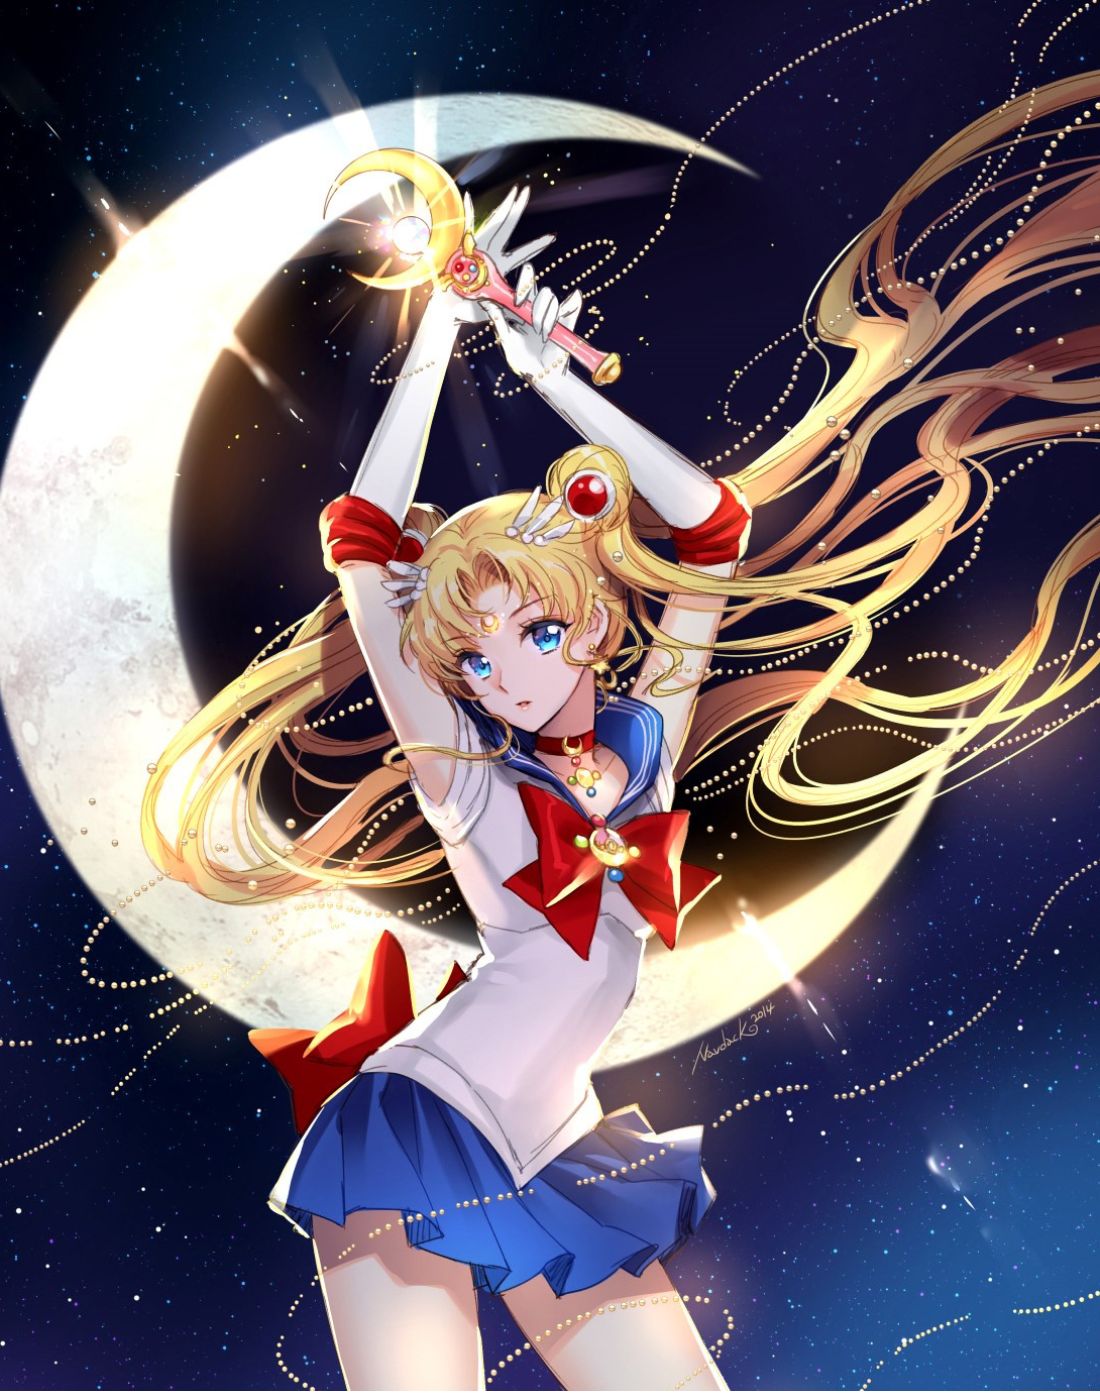 Dakimakura Sailor Moon